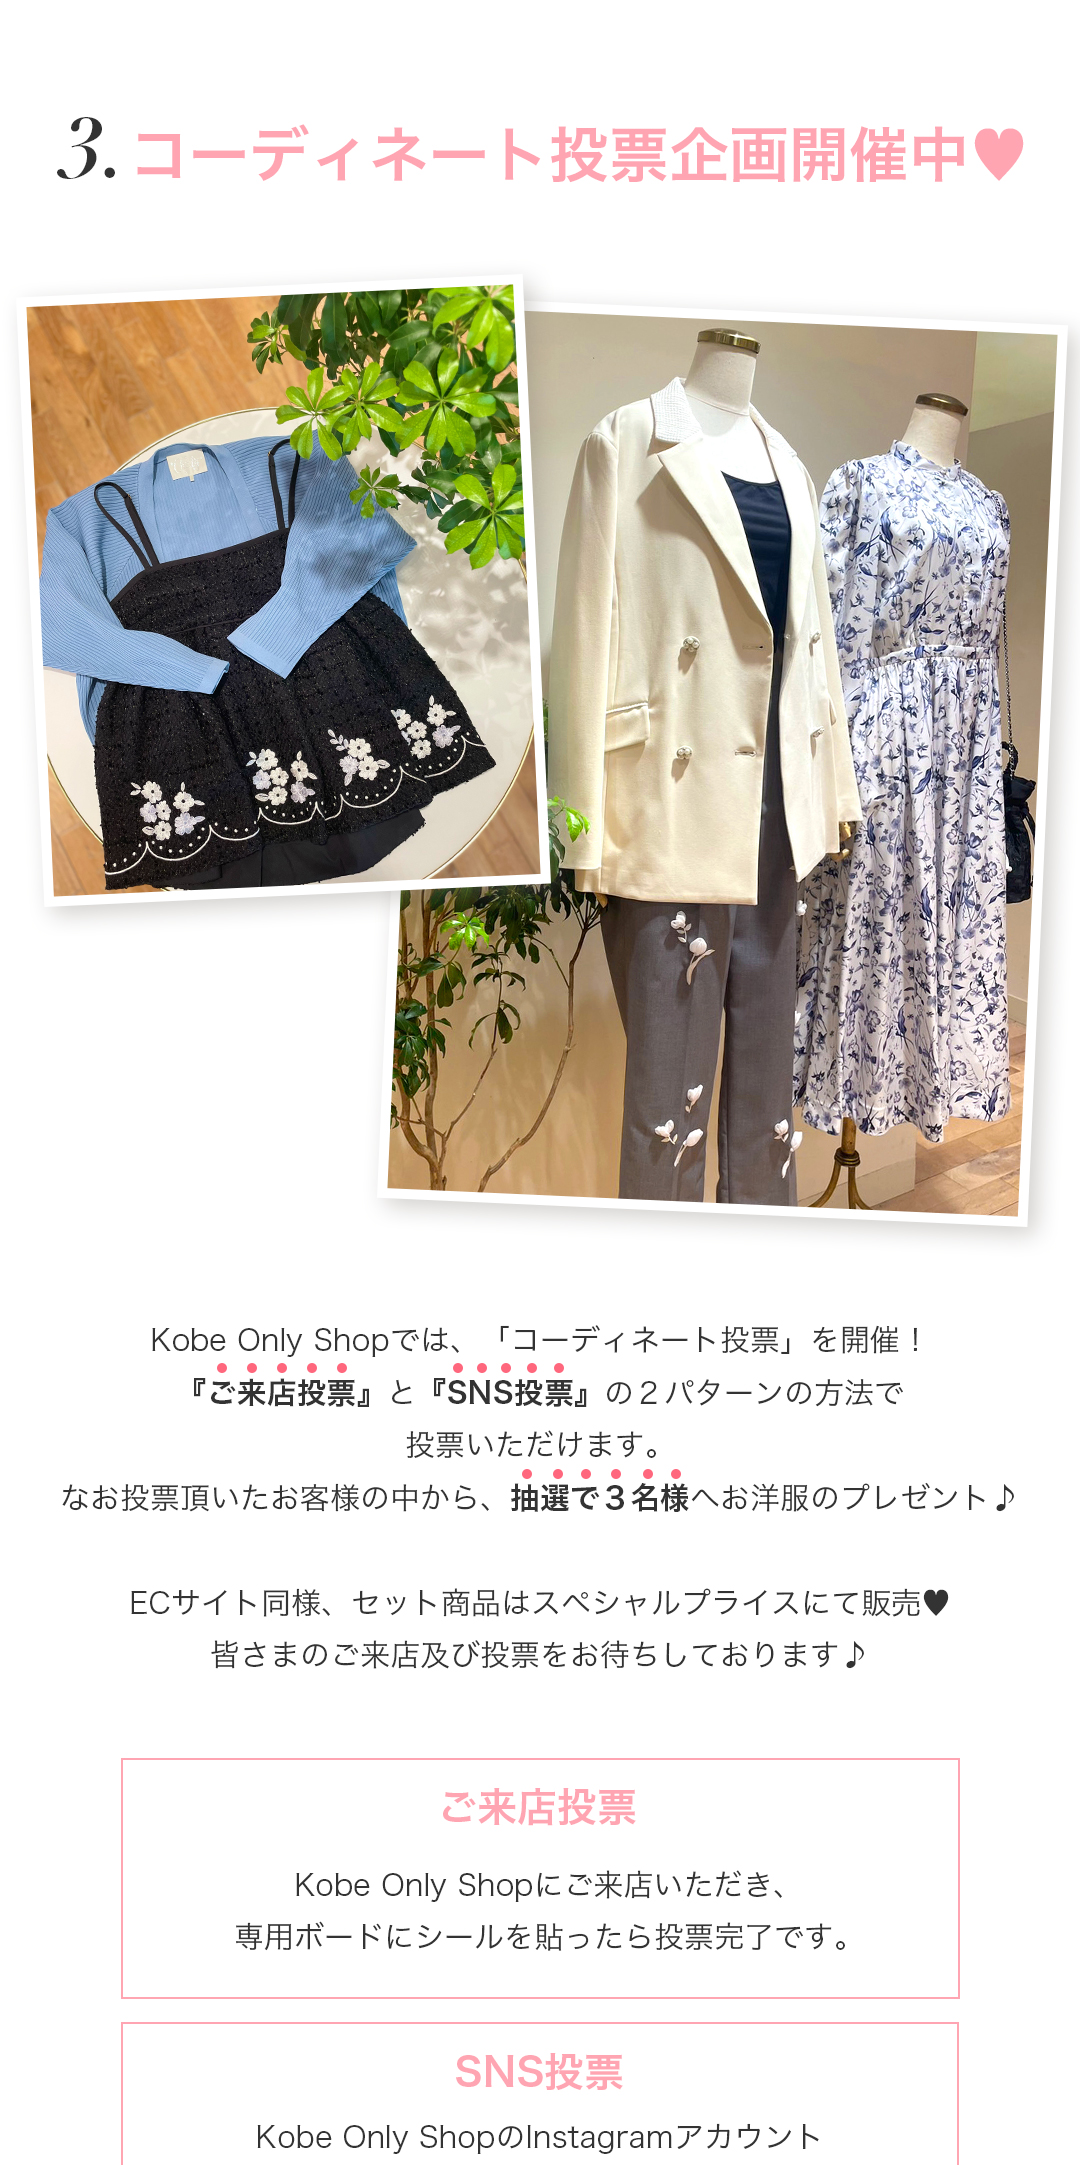 Kobe Only Shopでは、「コーディネート投票」を開催！『ご来店投票』と『SNS投票』の2パターンの方法で投票いただけます。なお投票頂いたお客様の中から、抽選で3名様へお洋服のプレゼント